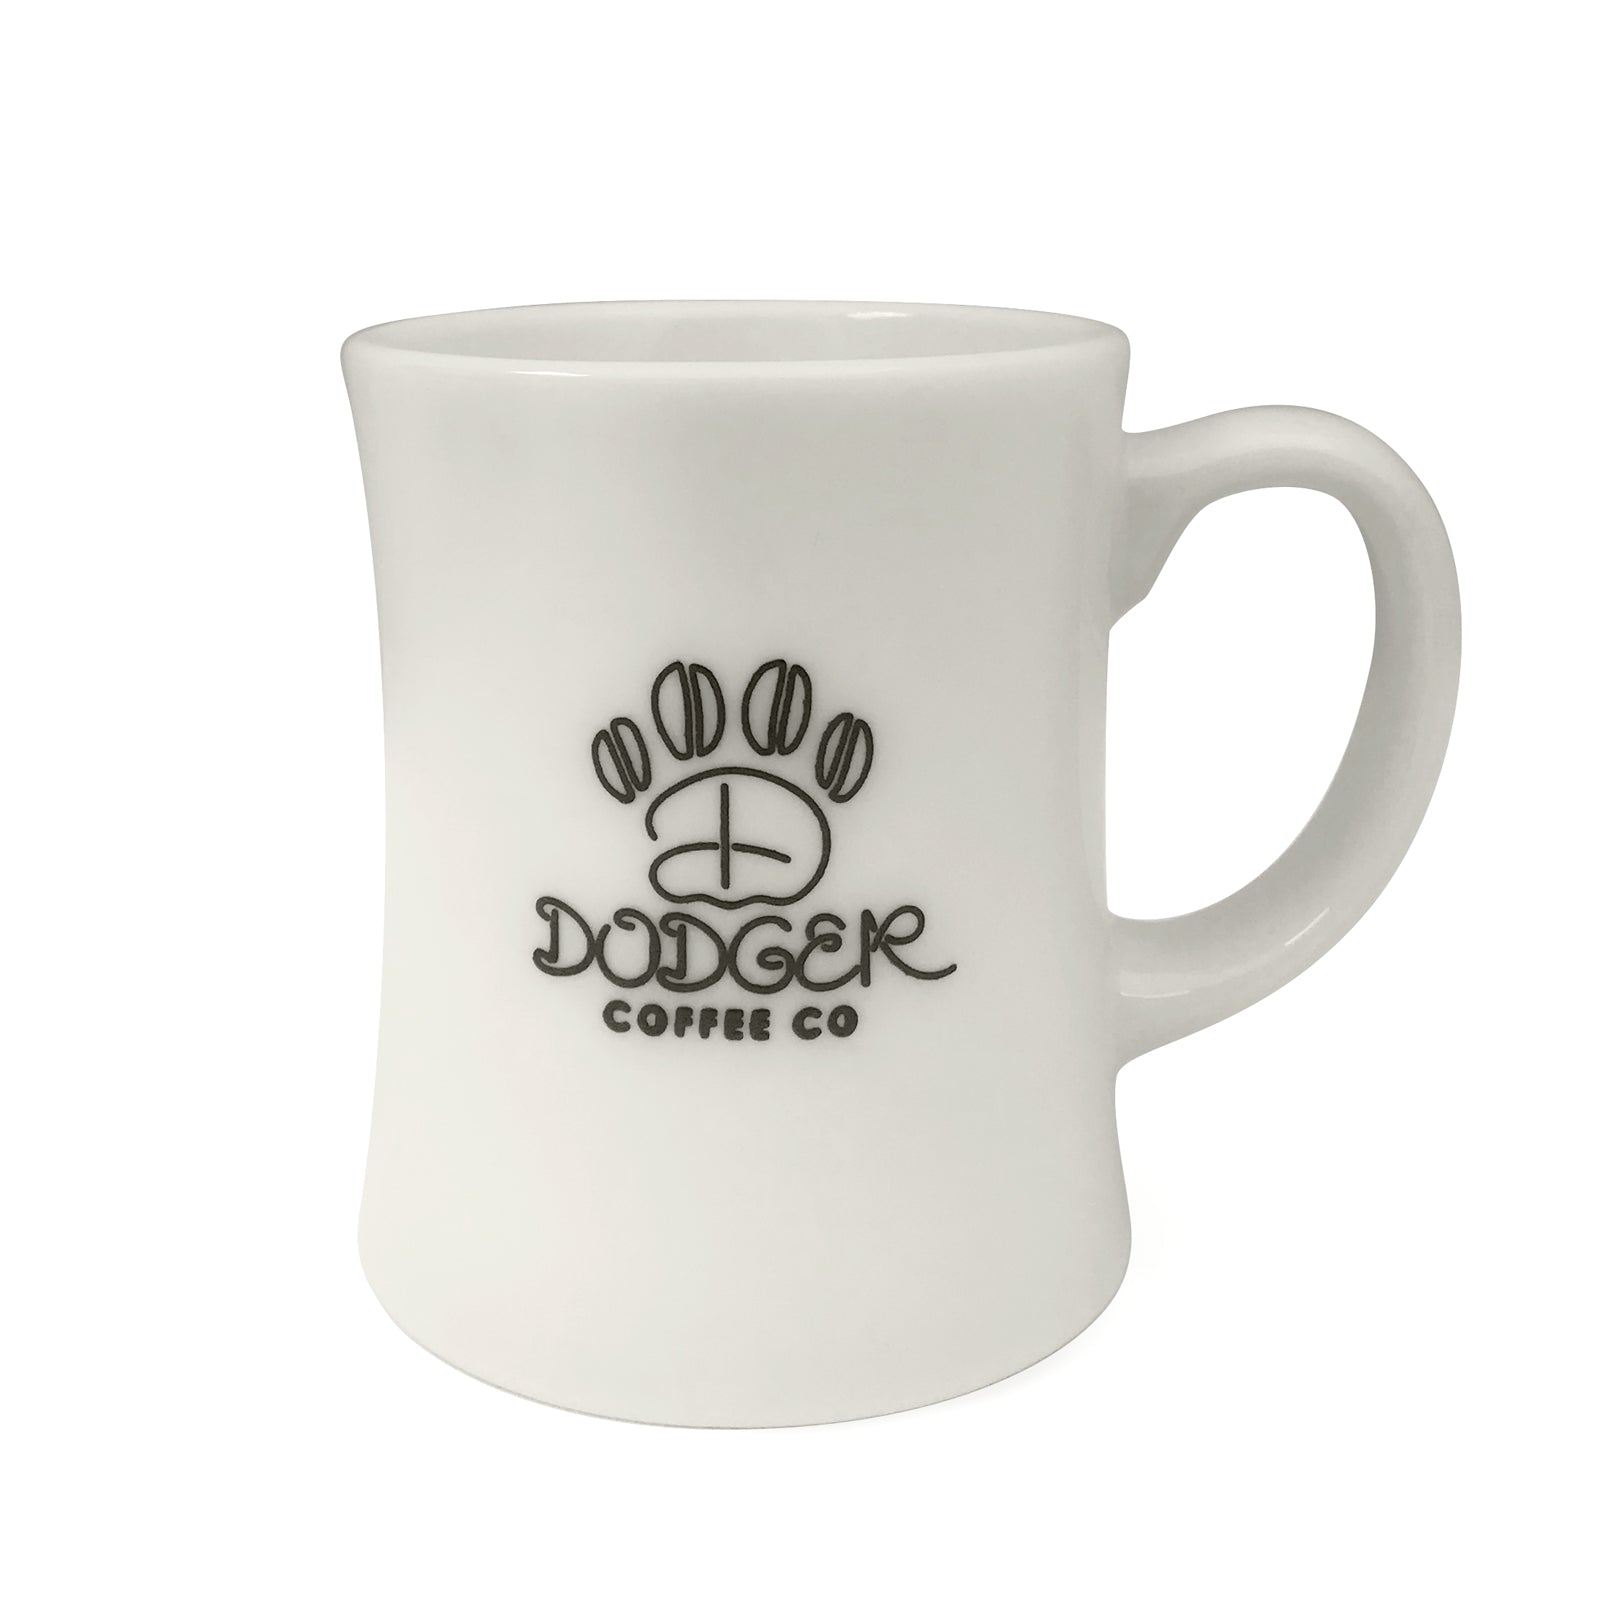 Dodgers Mug, Mug,Los Angeles Mug,Baseball Mug,Mug for Dad,Do